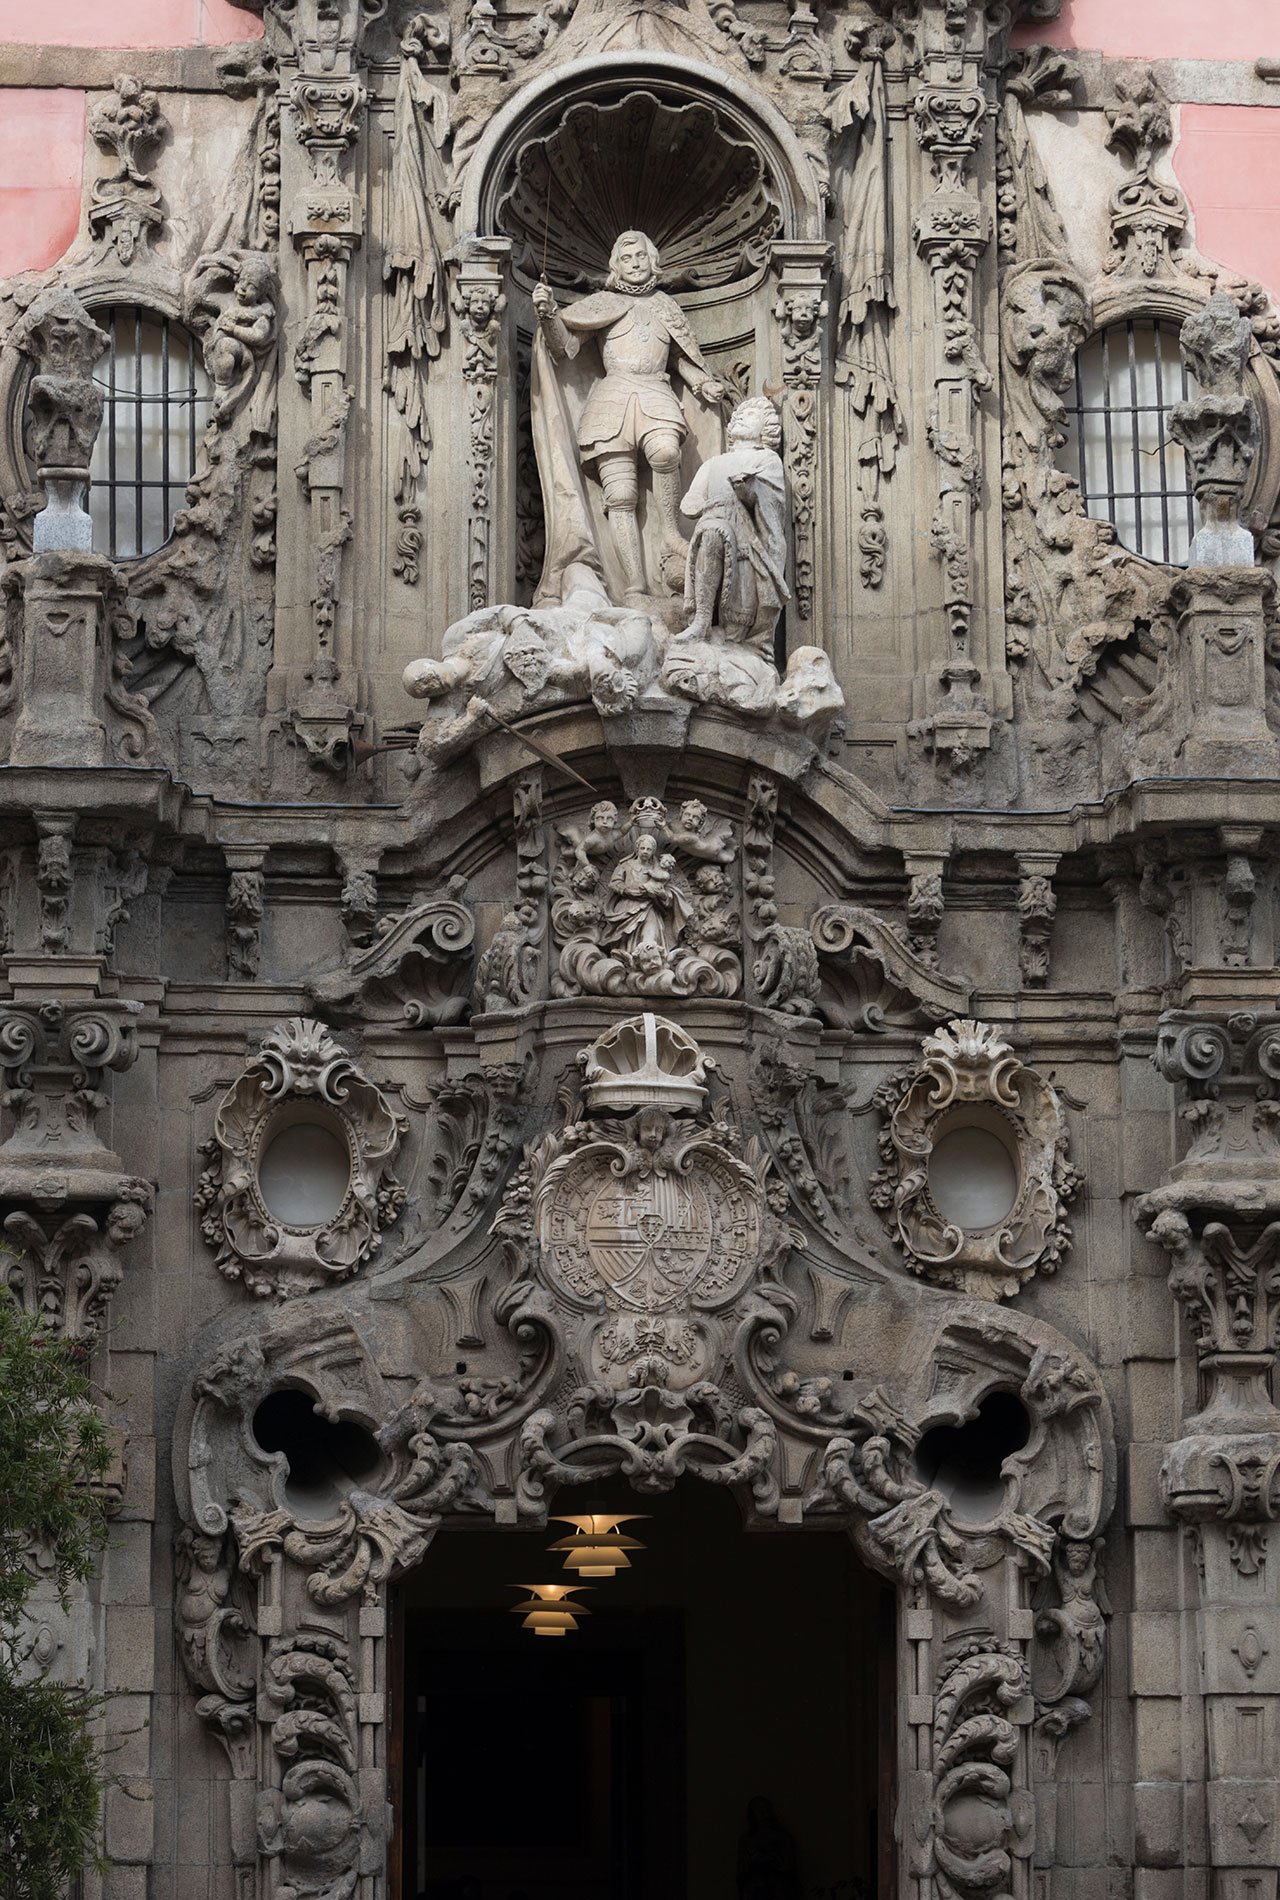 An ornate facade.